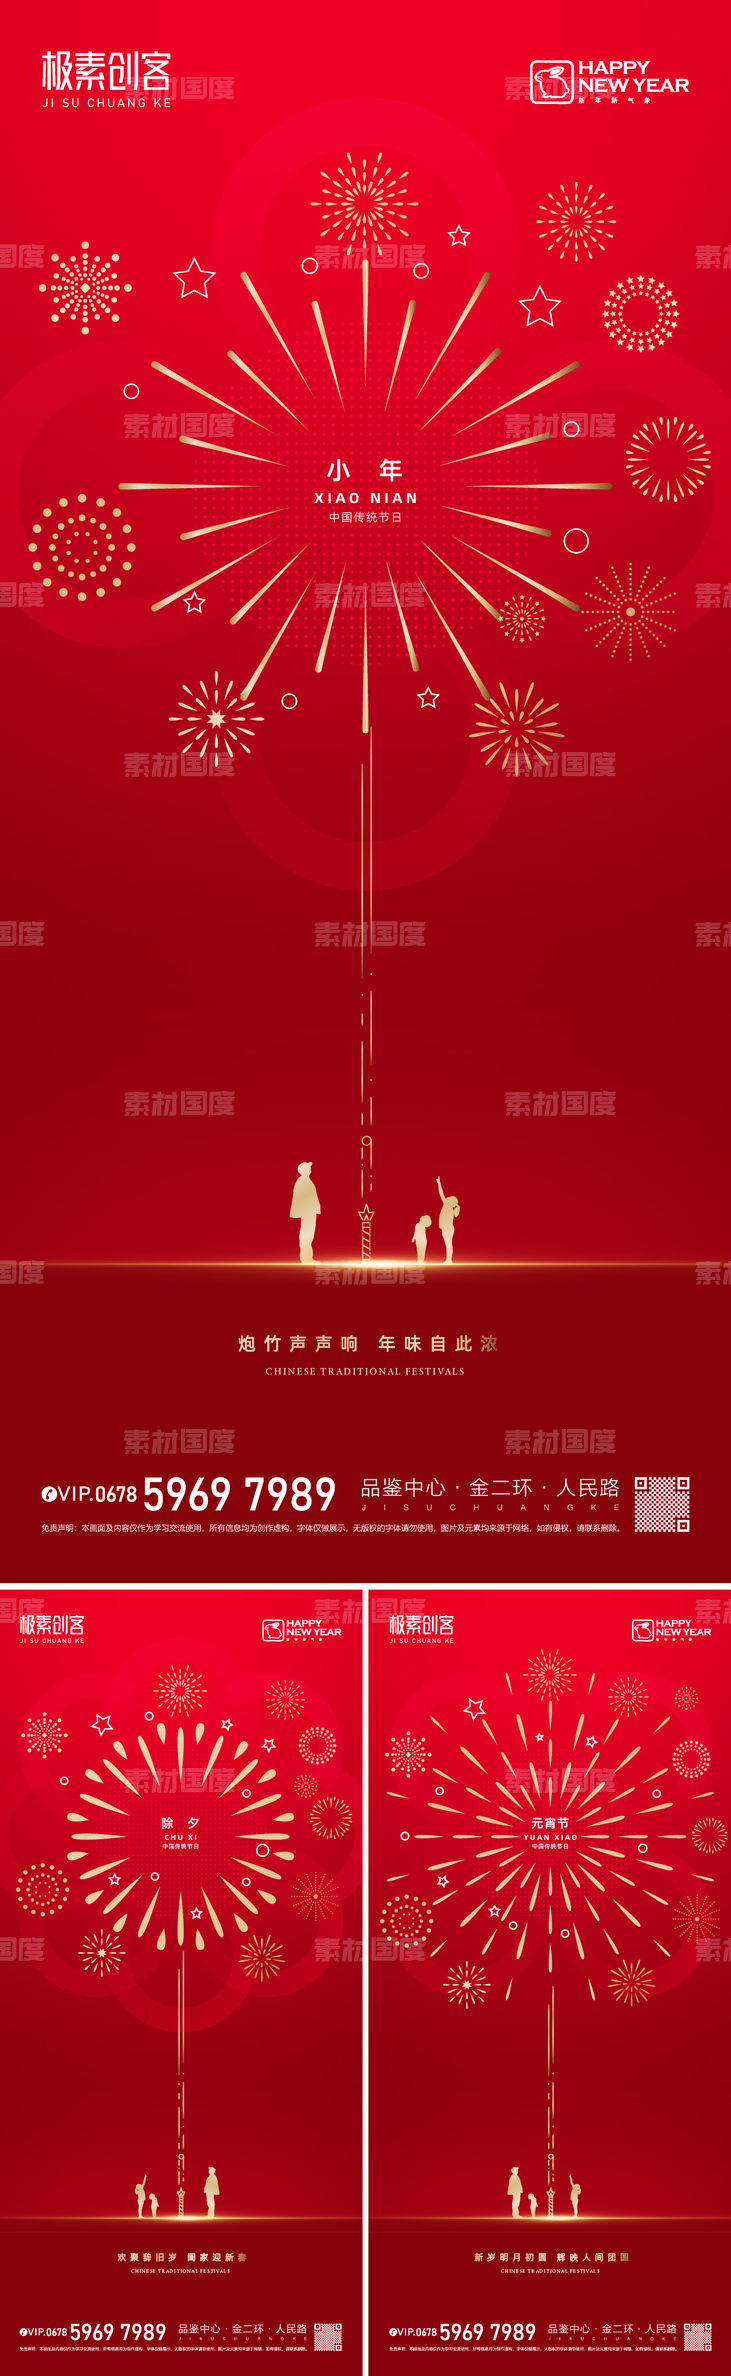 春节节日系列海报